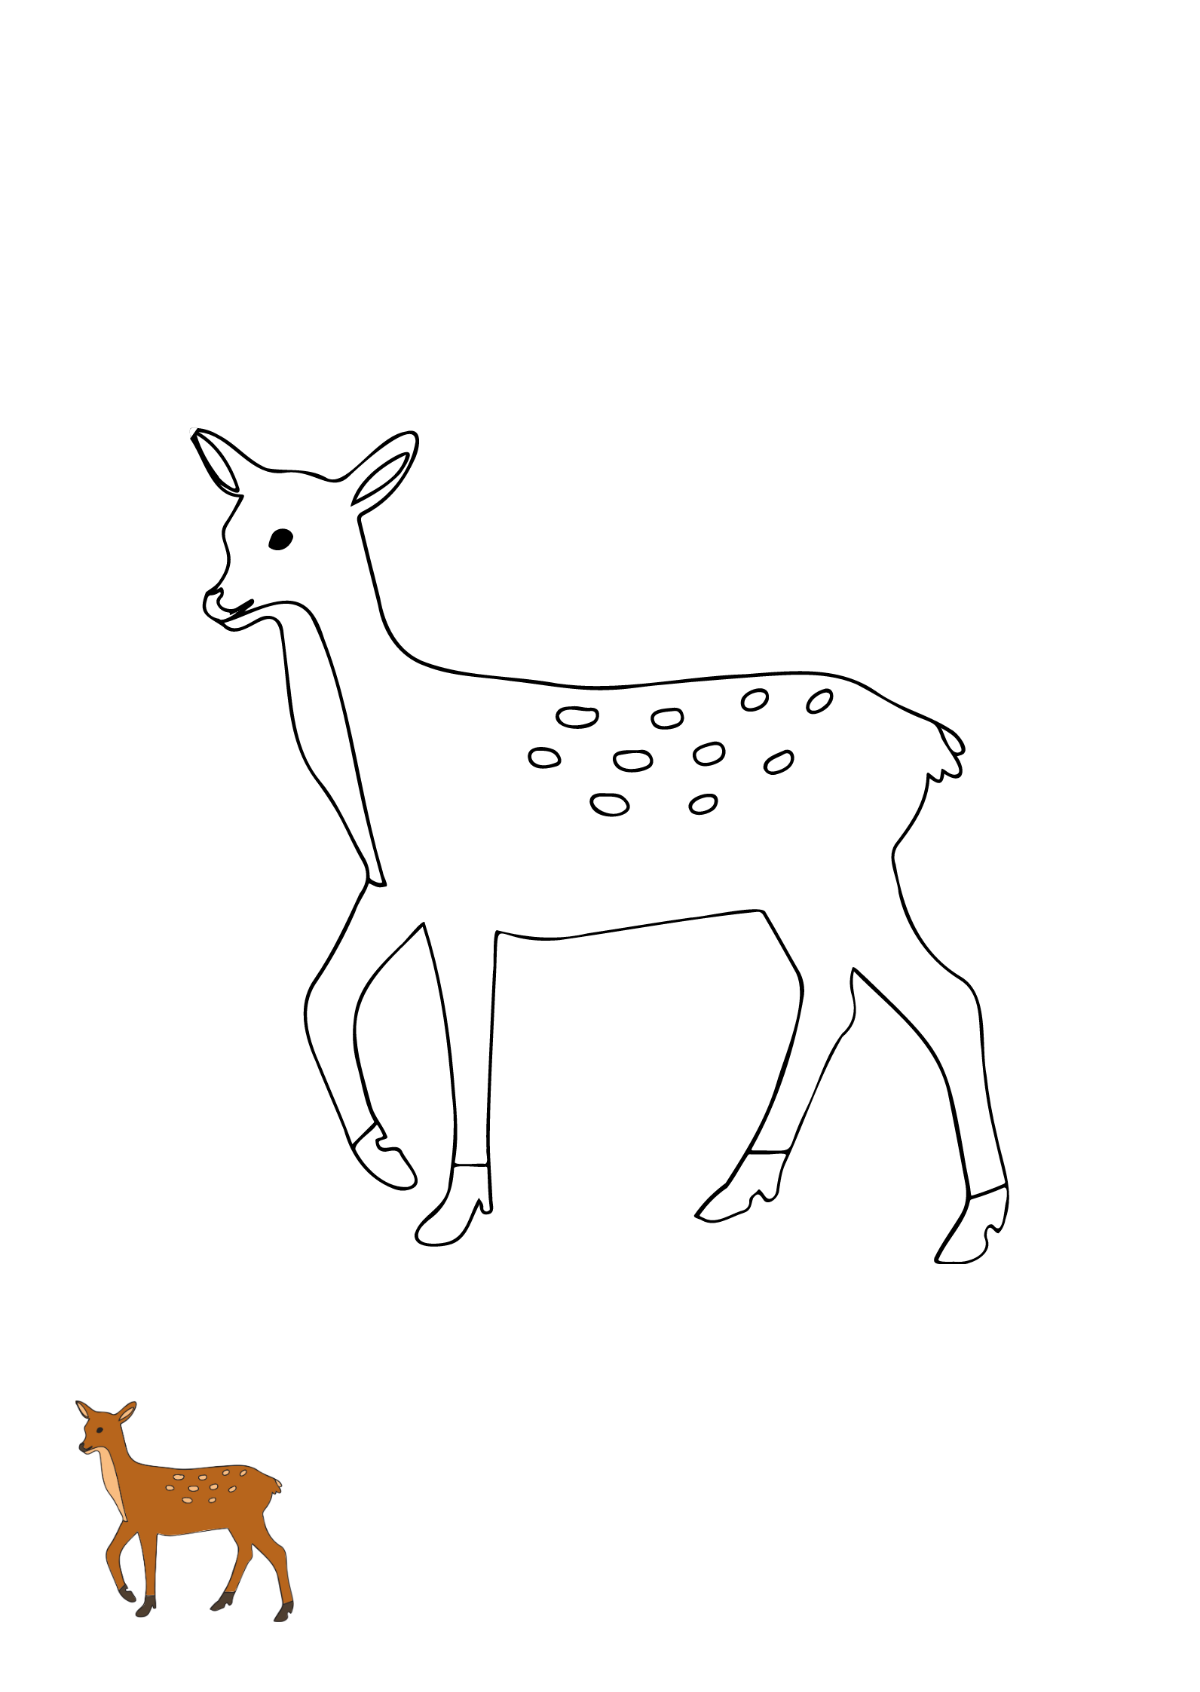 Doe Deer Coloring Page